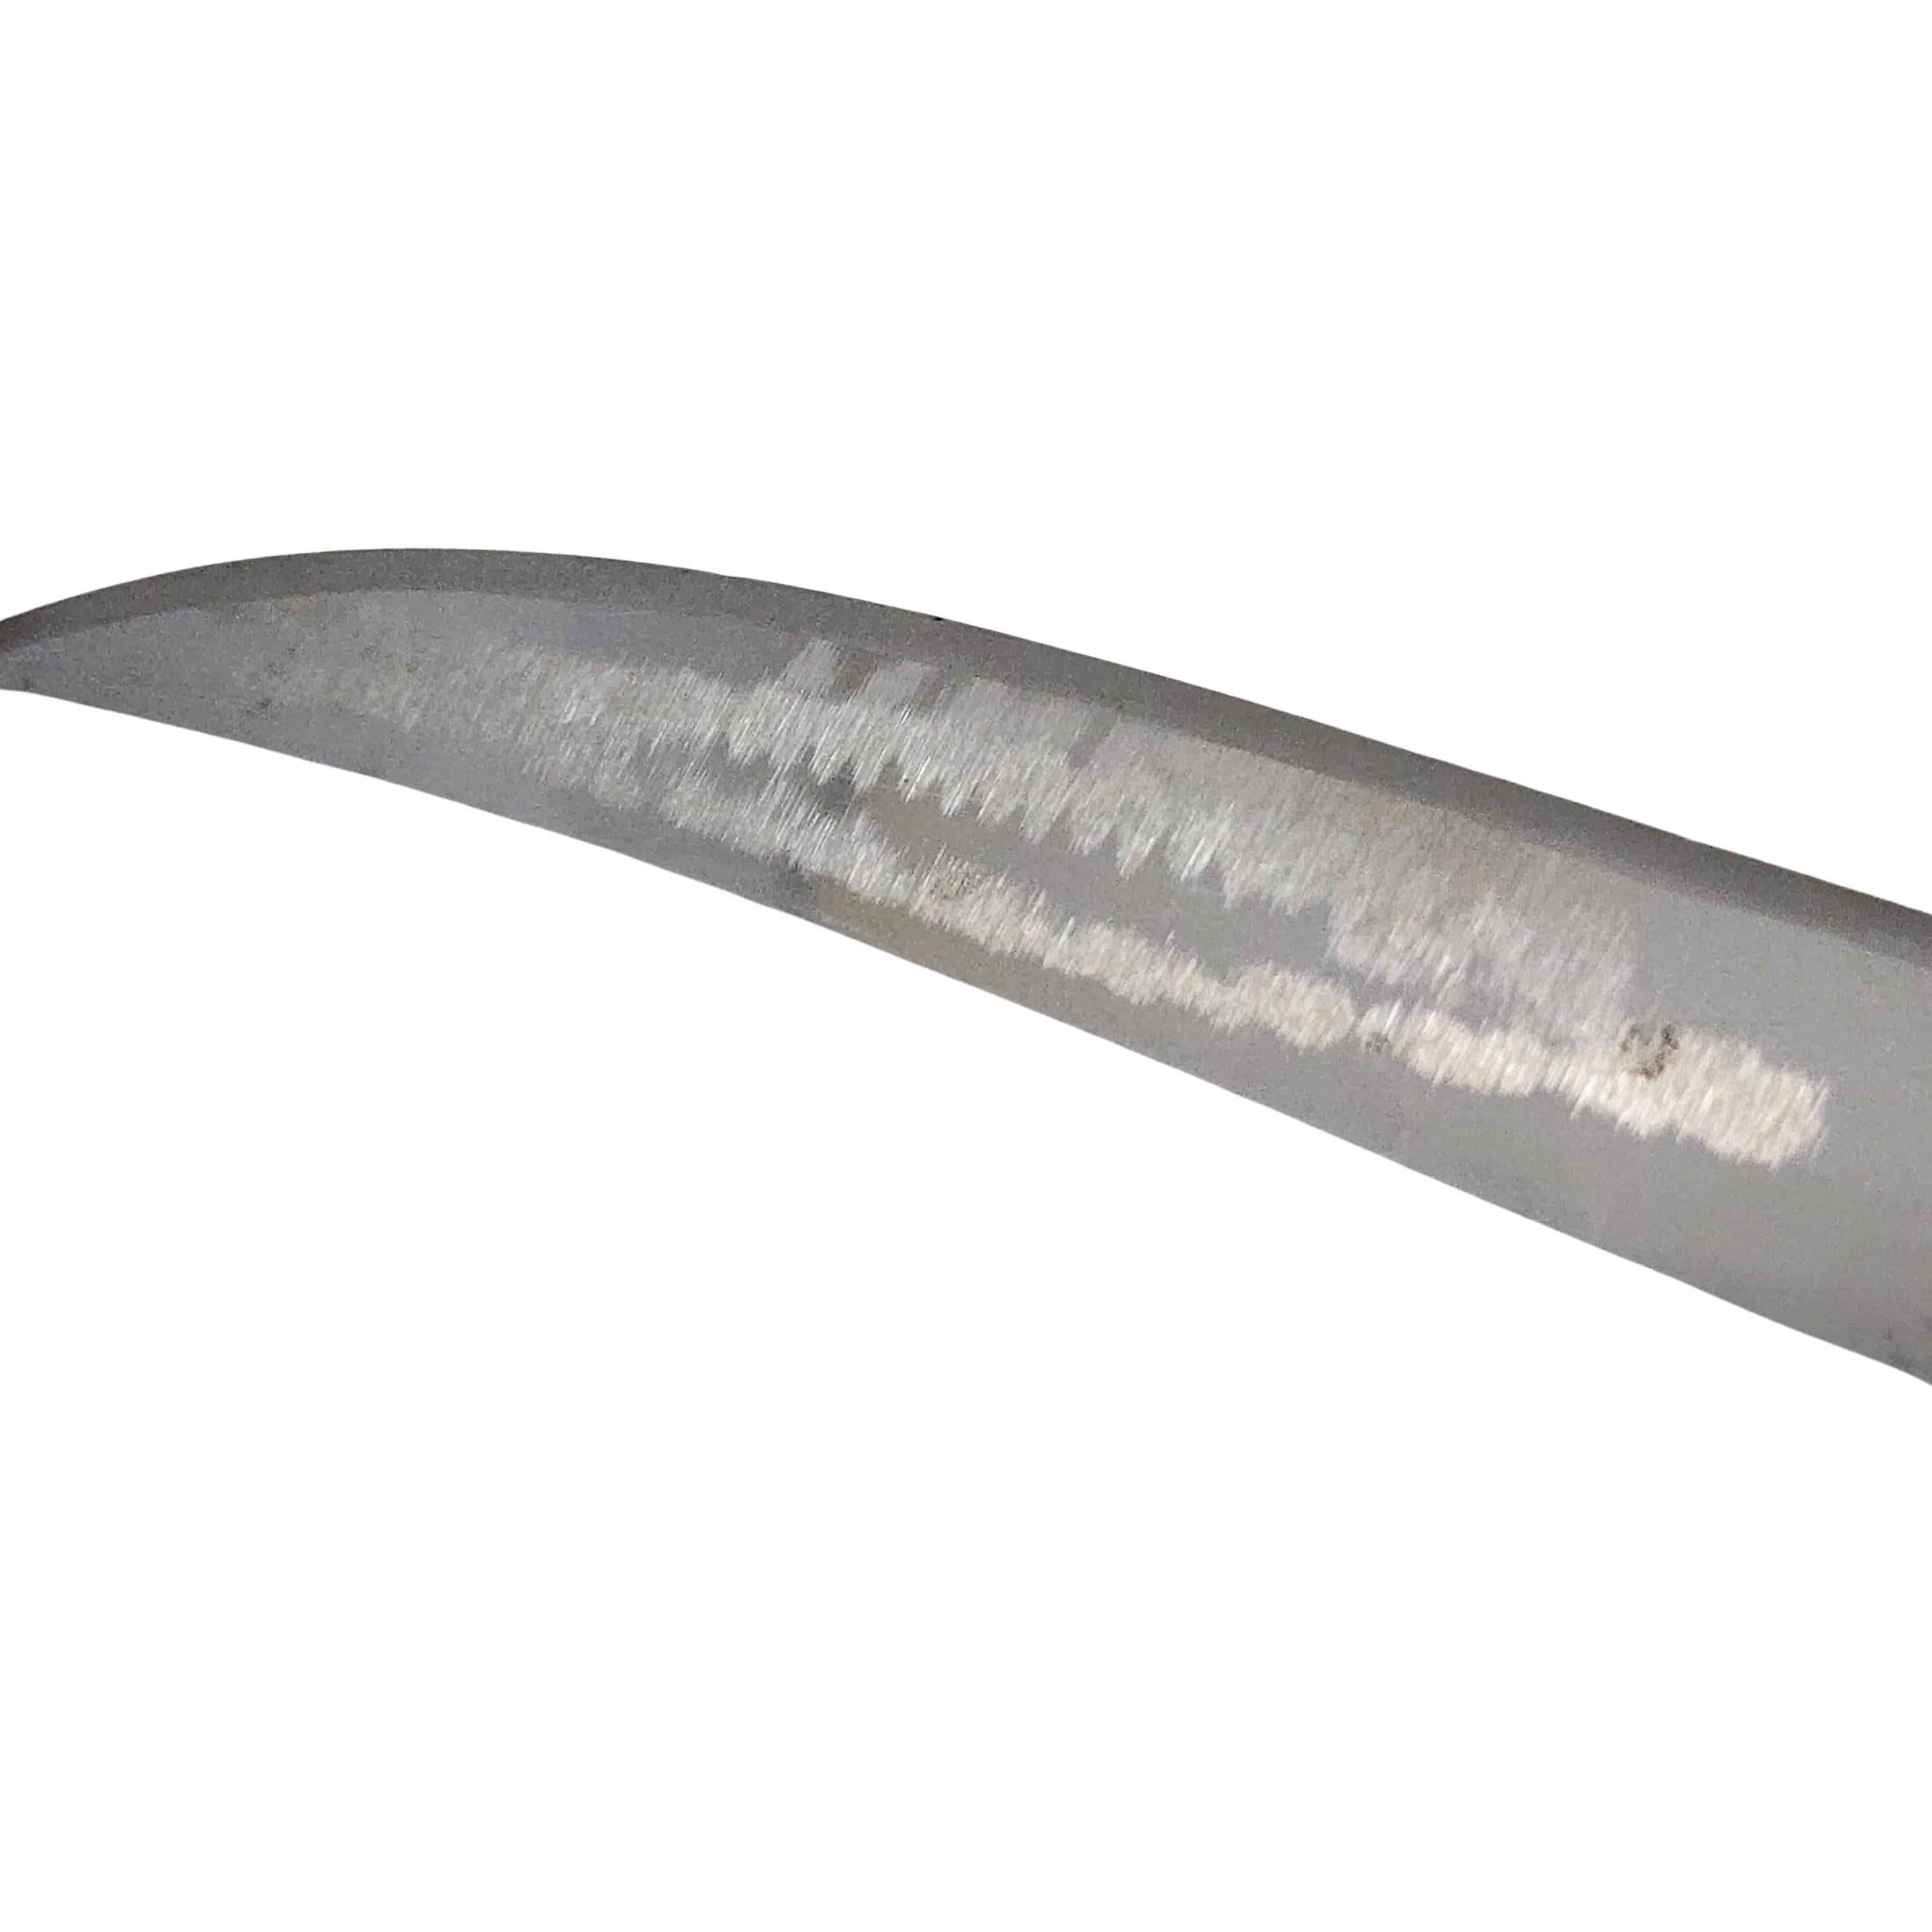 manchette knife